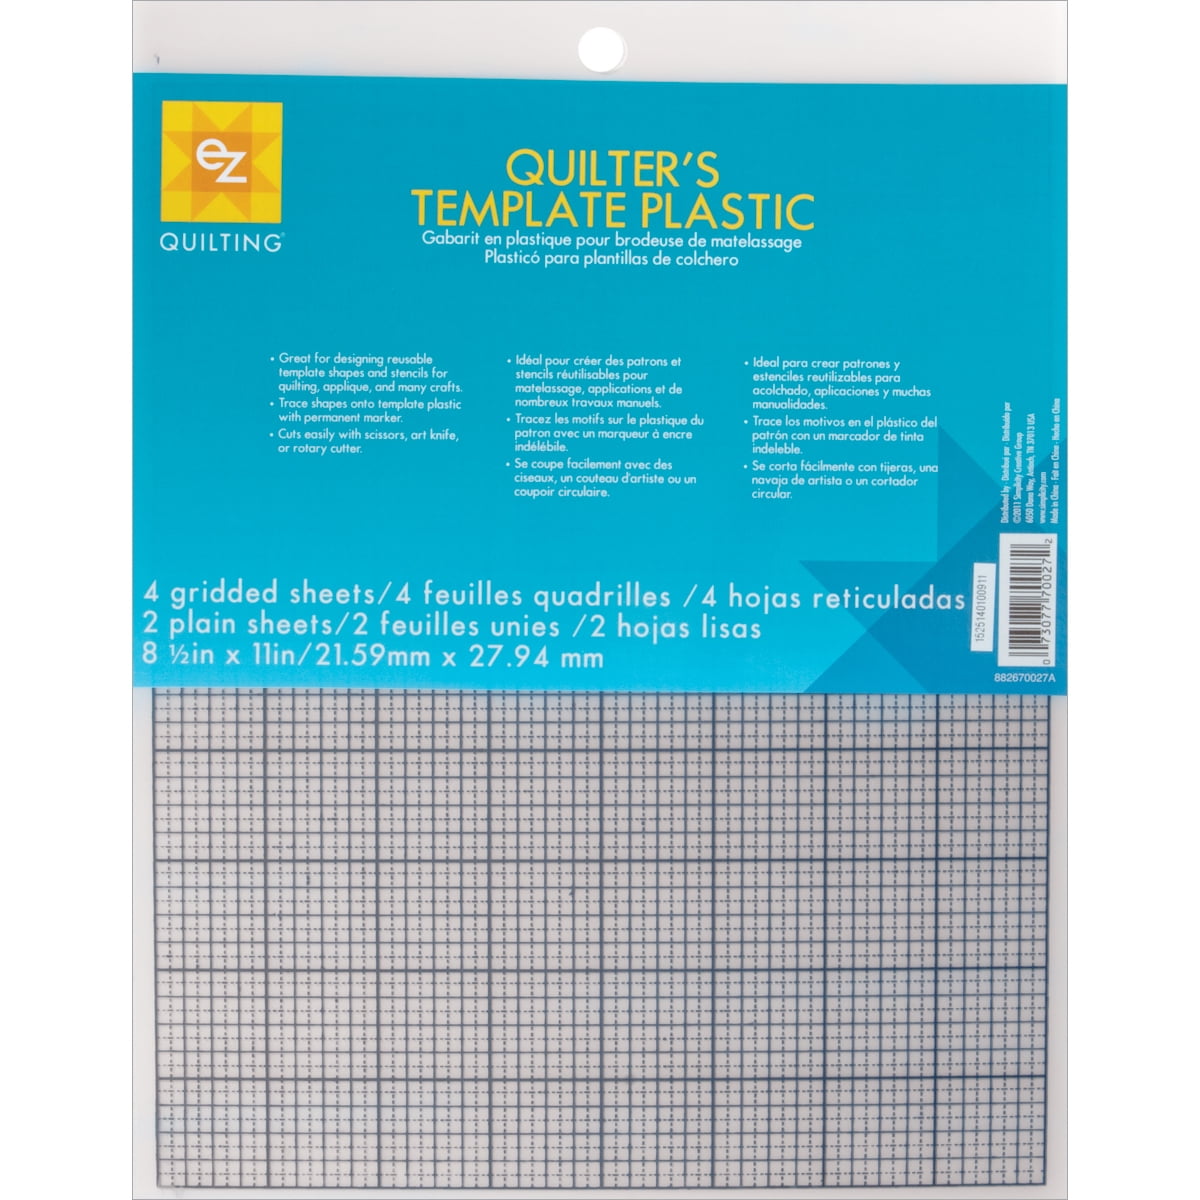 plastic-templates-8-1-2-x-11-6pk-walmart